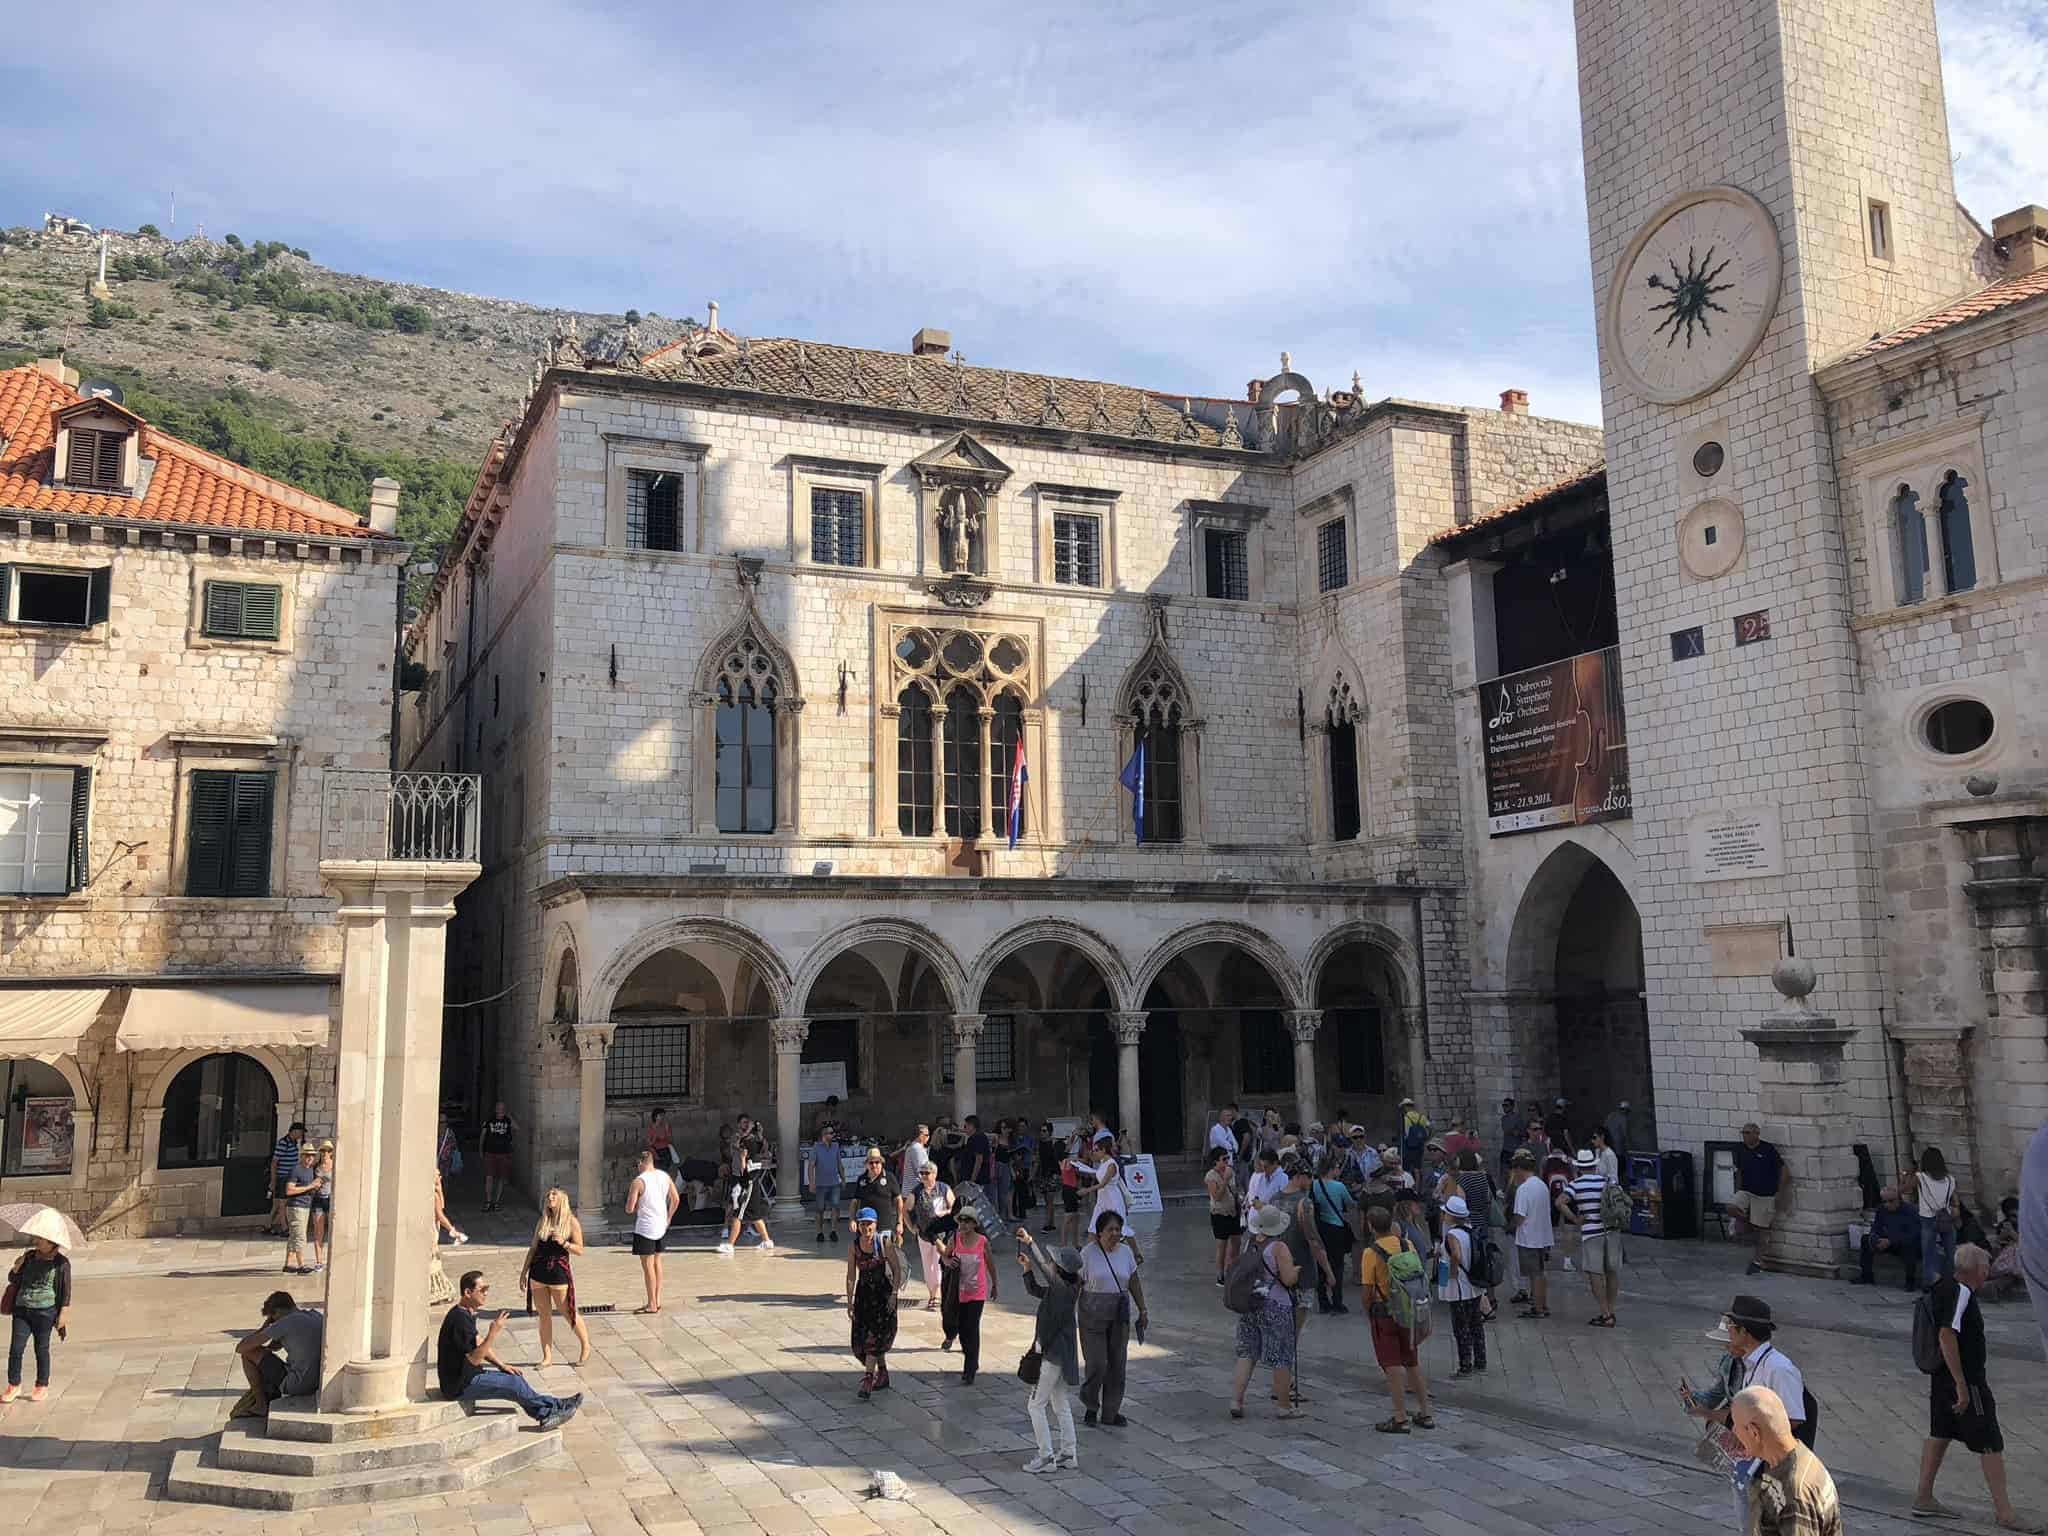 Nederlandse gids in Dubrovnik